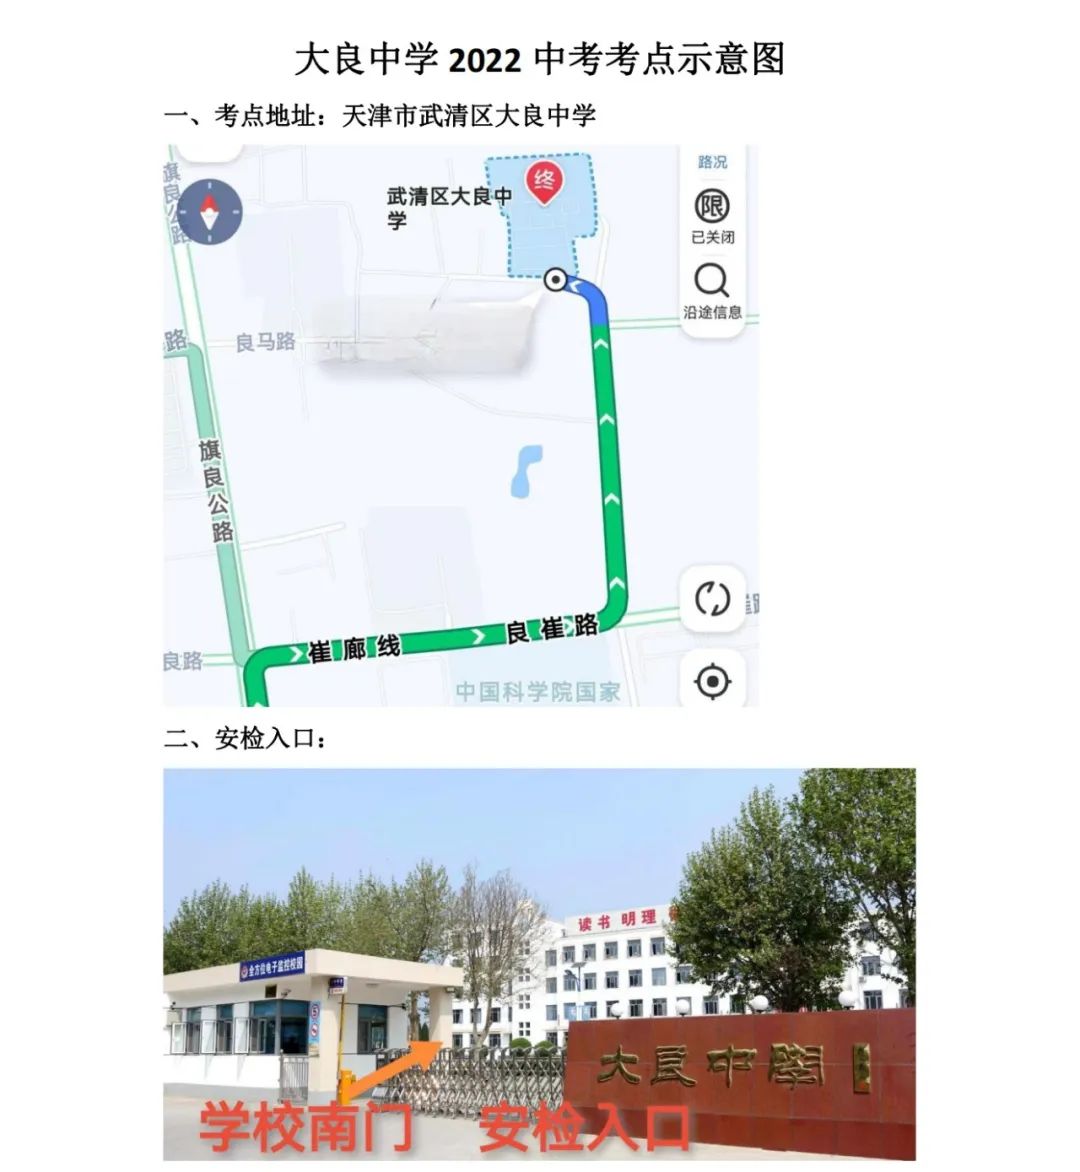 2022年天津武清区中考考点考场示意图(图8)